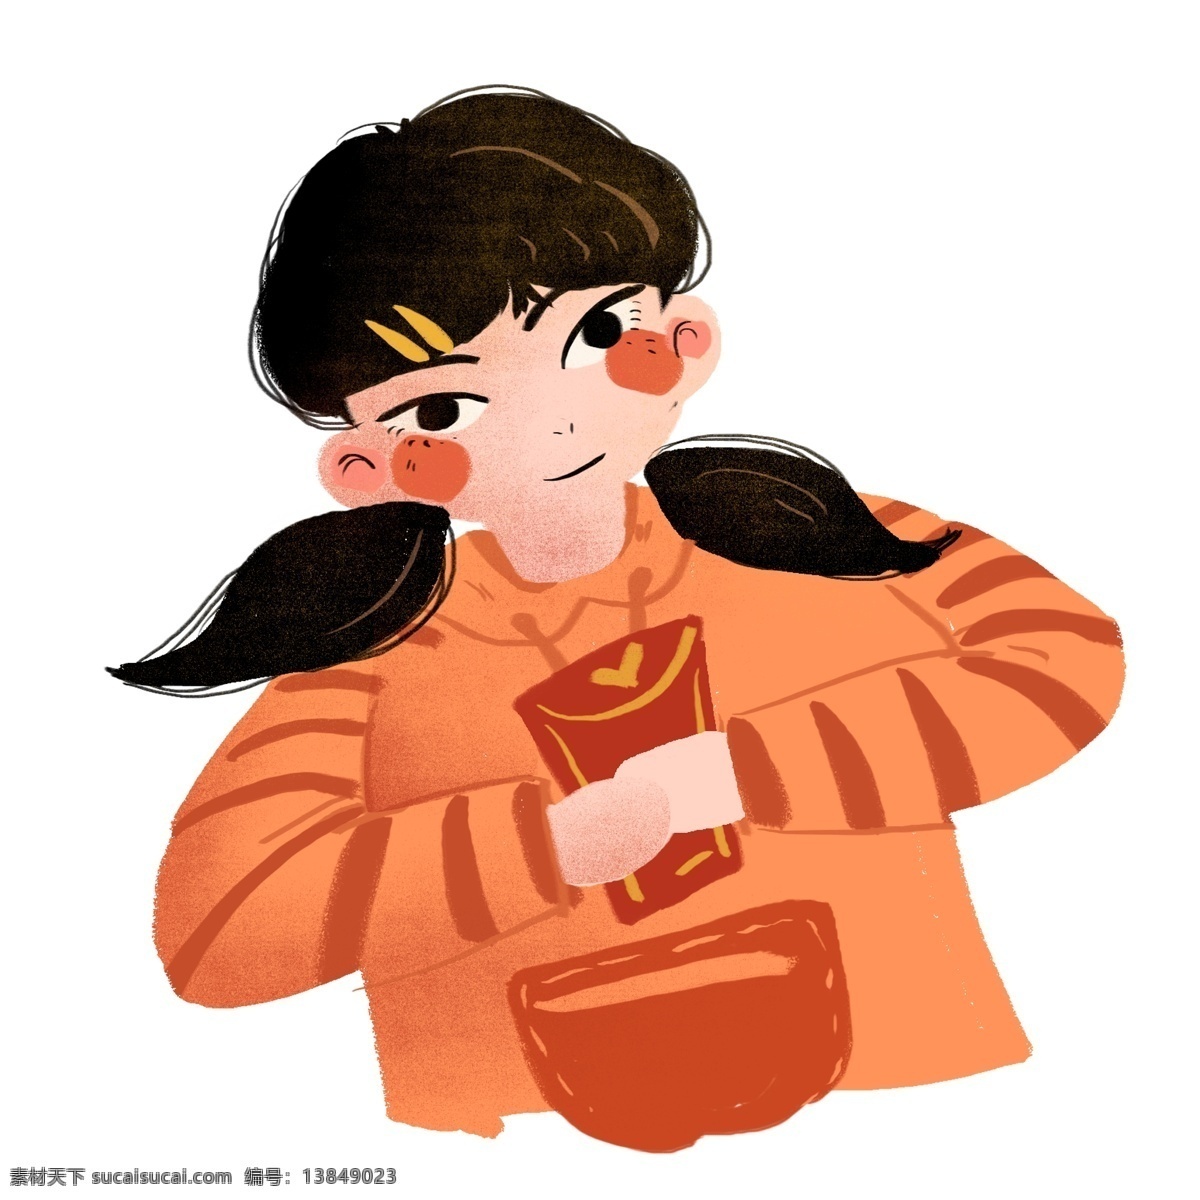 春节 拜年 女人 卡通 人物 红包 女孩 卡通设计 恭喜发财 2019年 猪年元素 人物设计